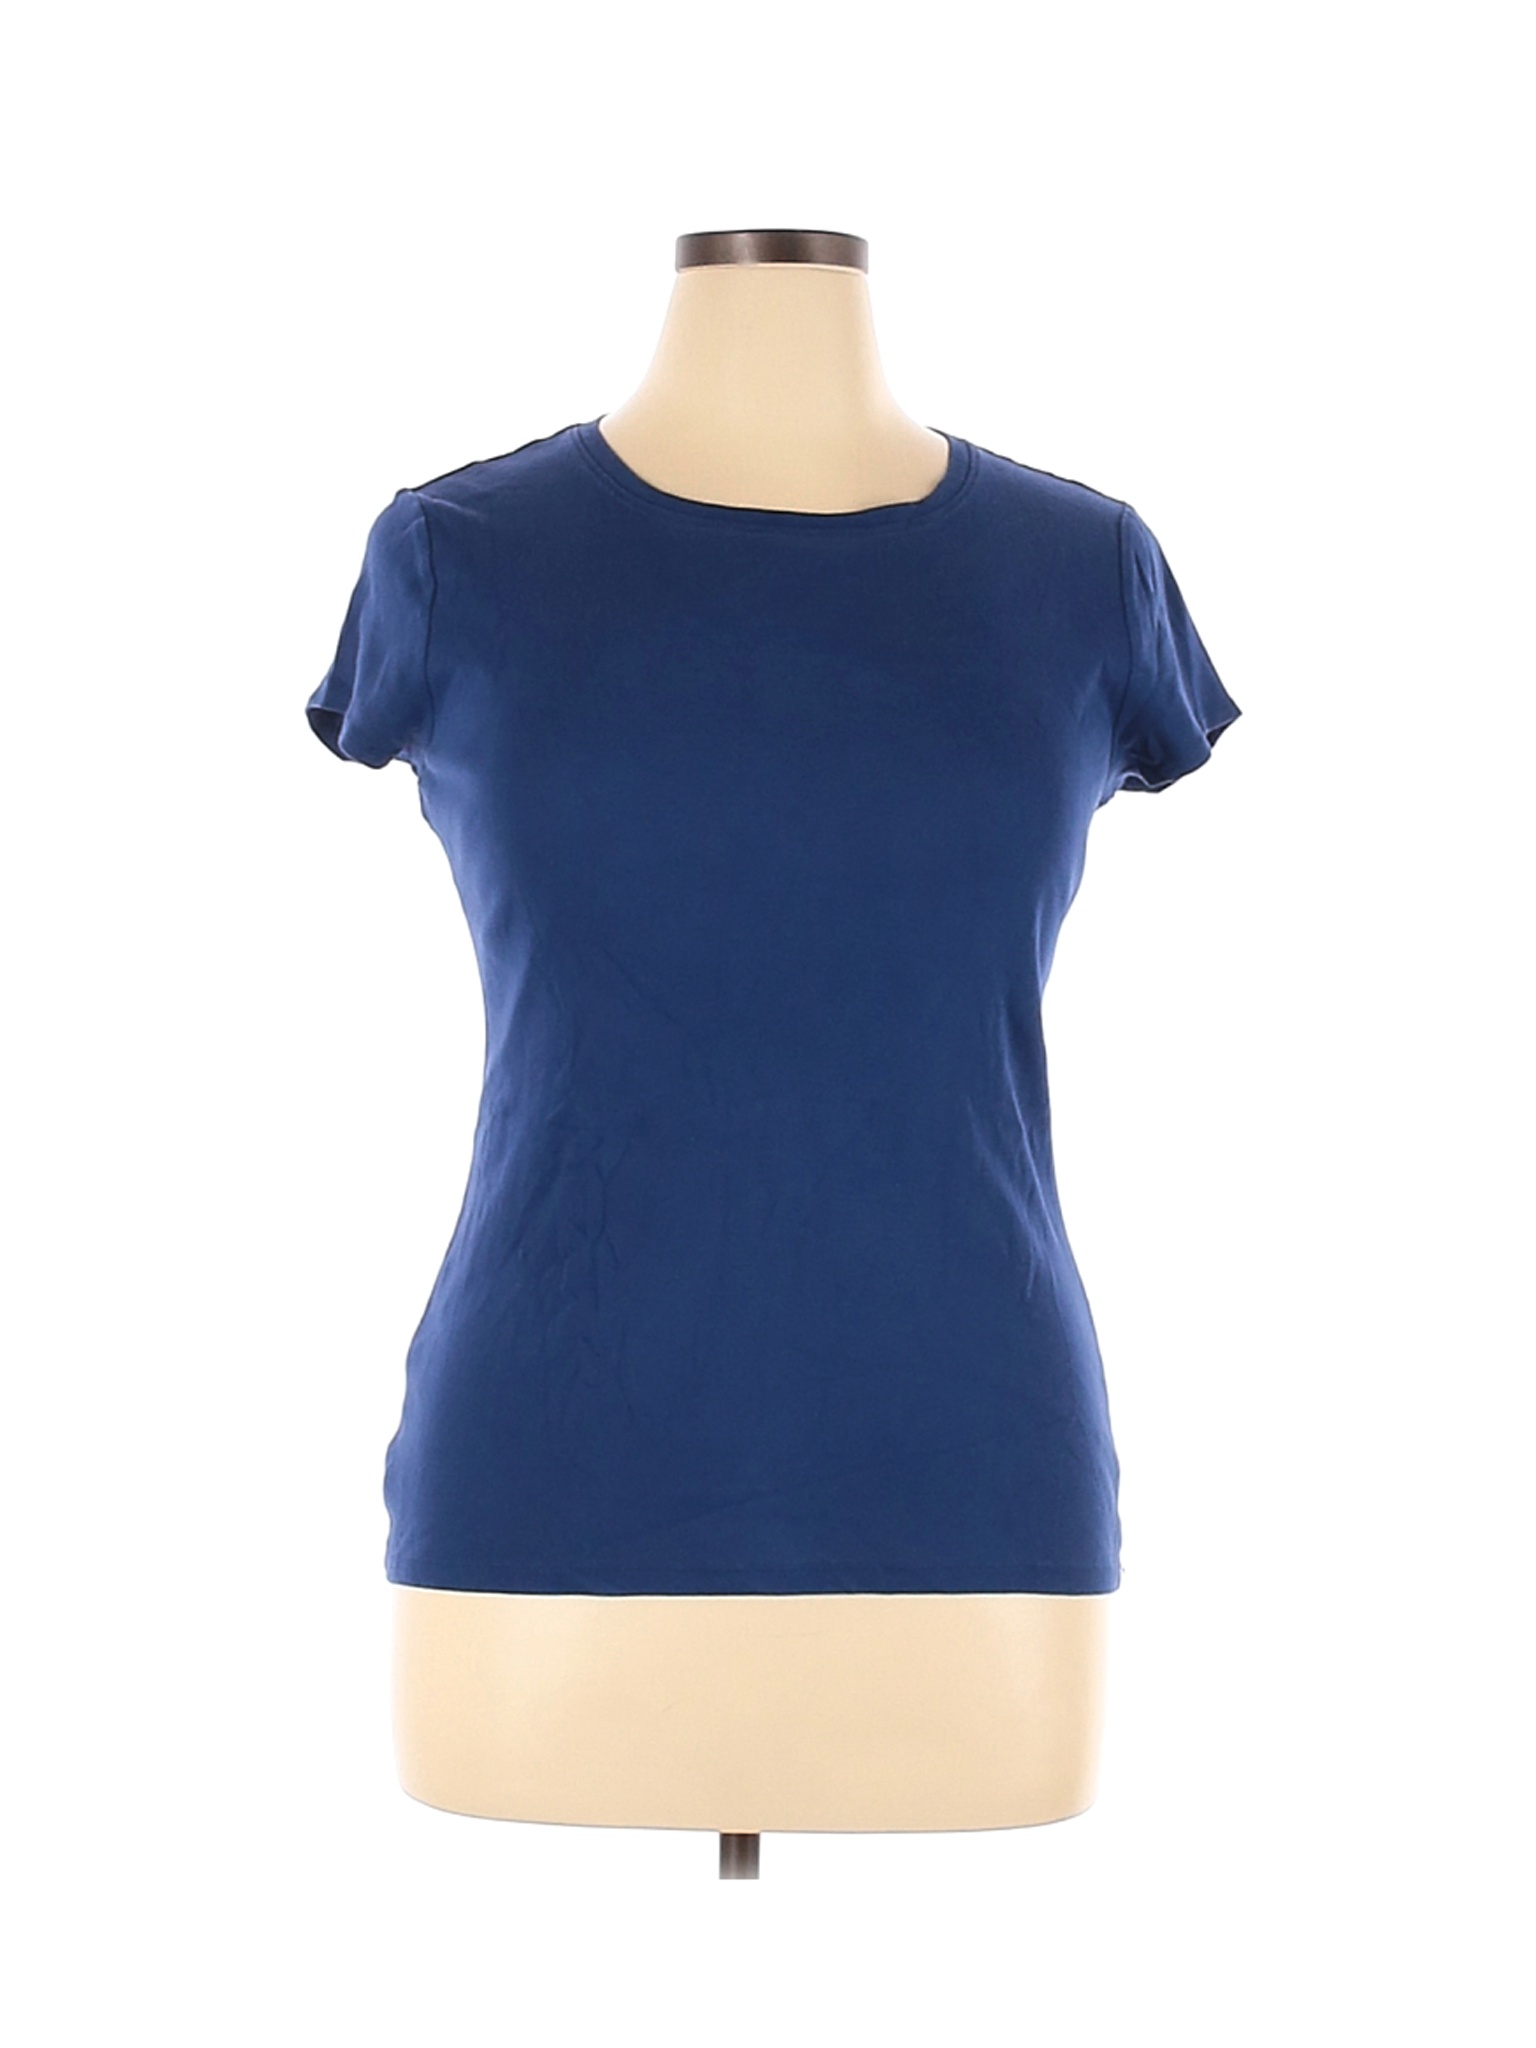 Ann Taylor Factory Women Blue Short Sleeve T-Shirt L | eBay